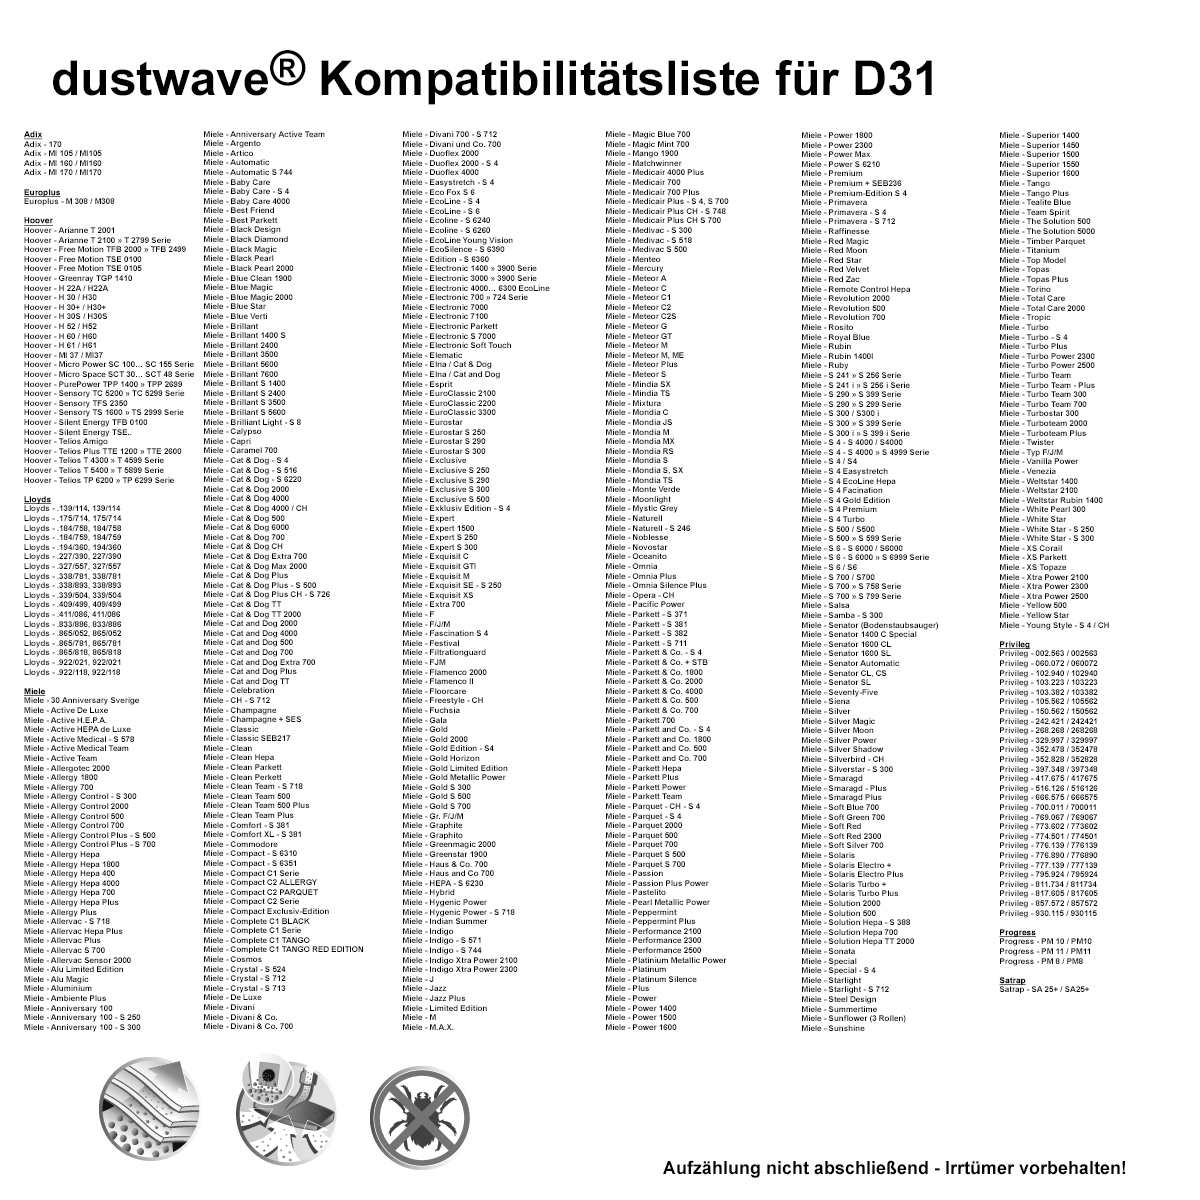 Dustwave® 1 Staubsaugerbeutel für Base BA 3100 - hocheffizient mit Hygieneverschluss - Made in Germany